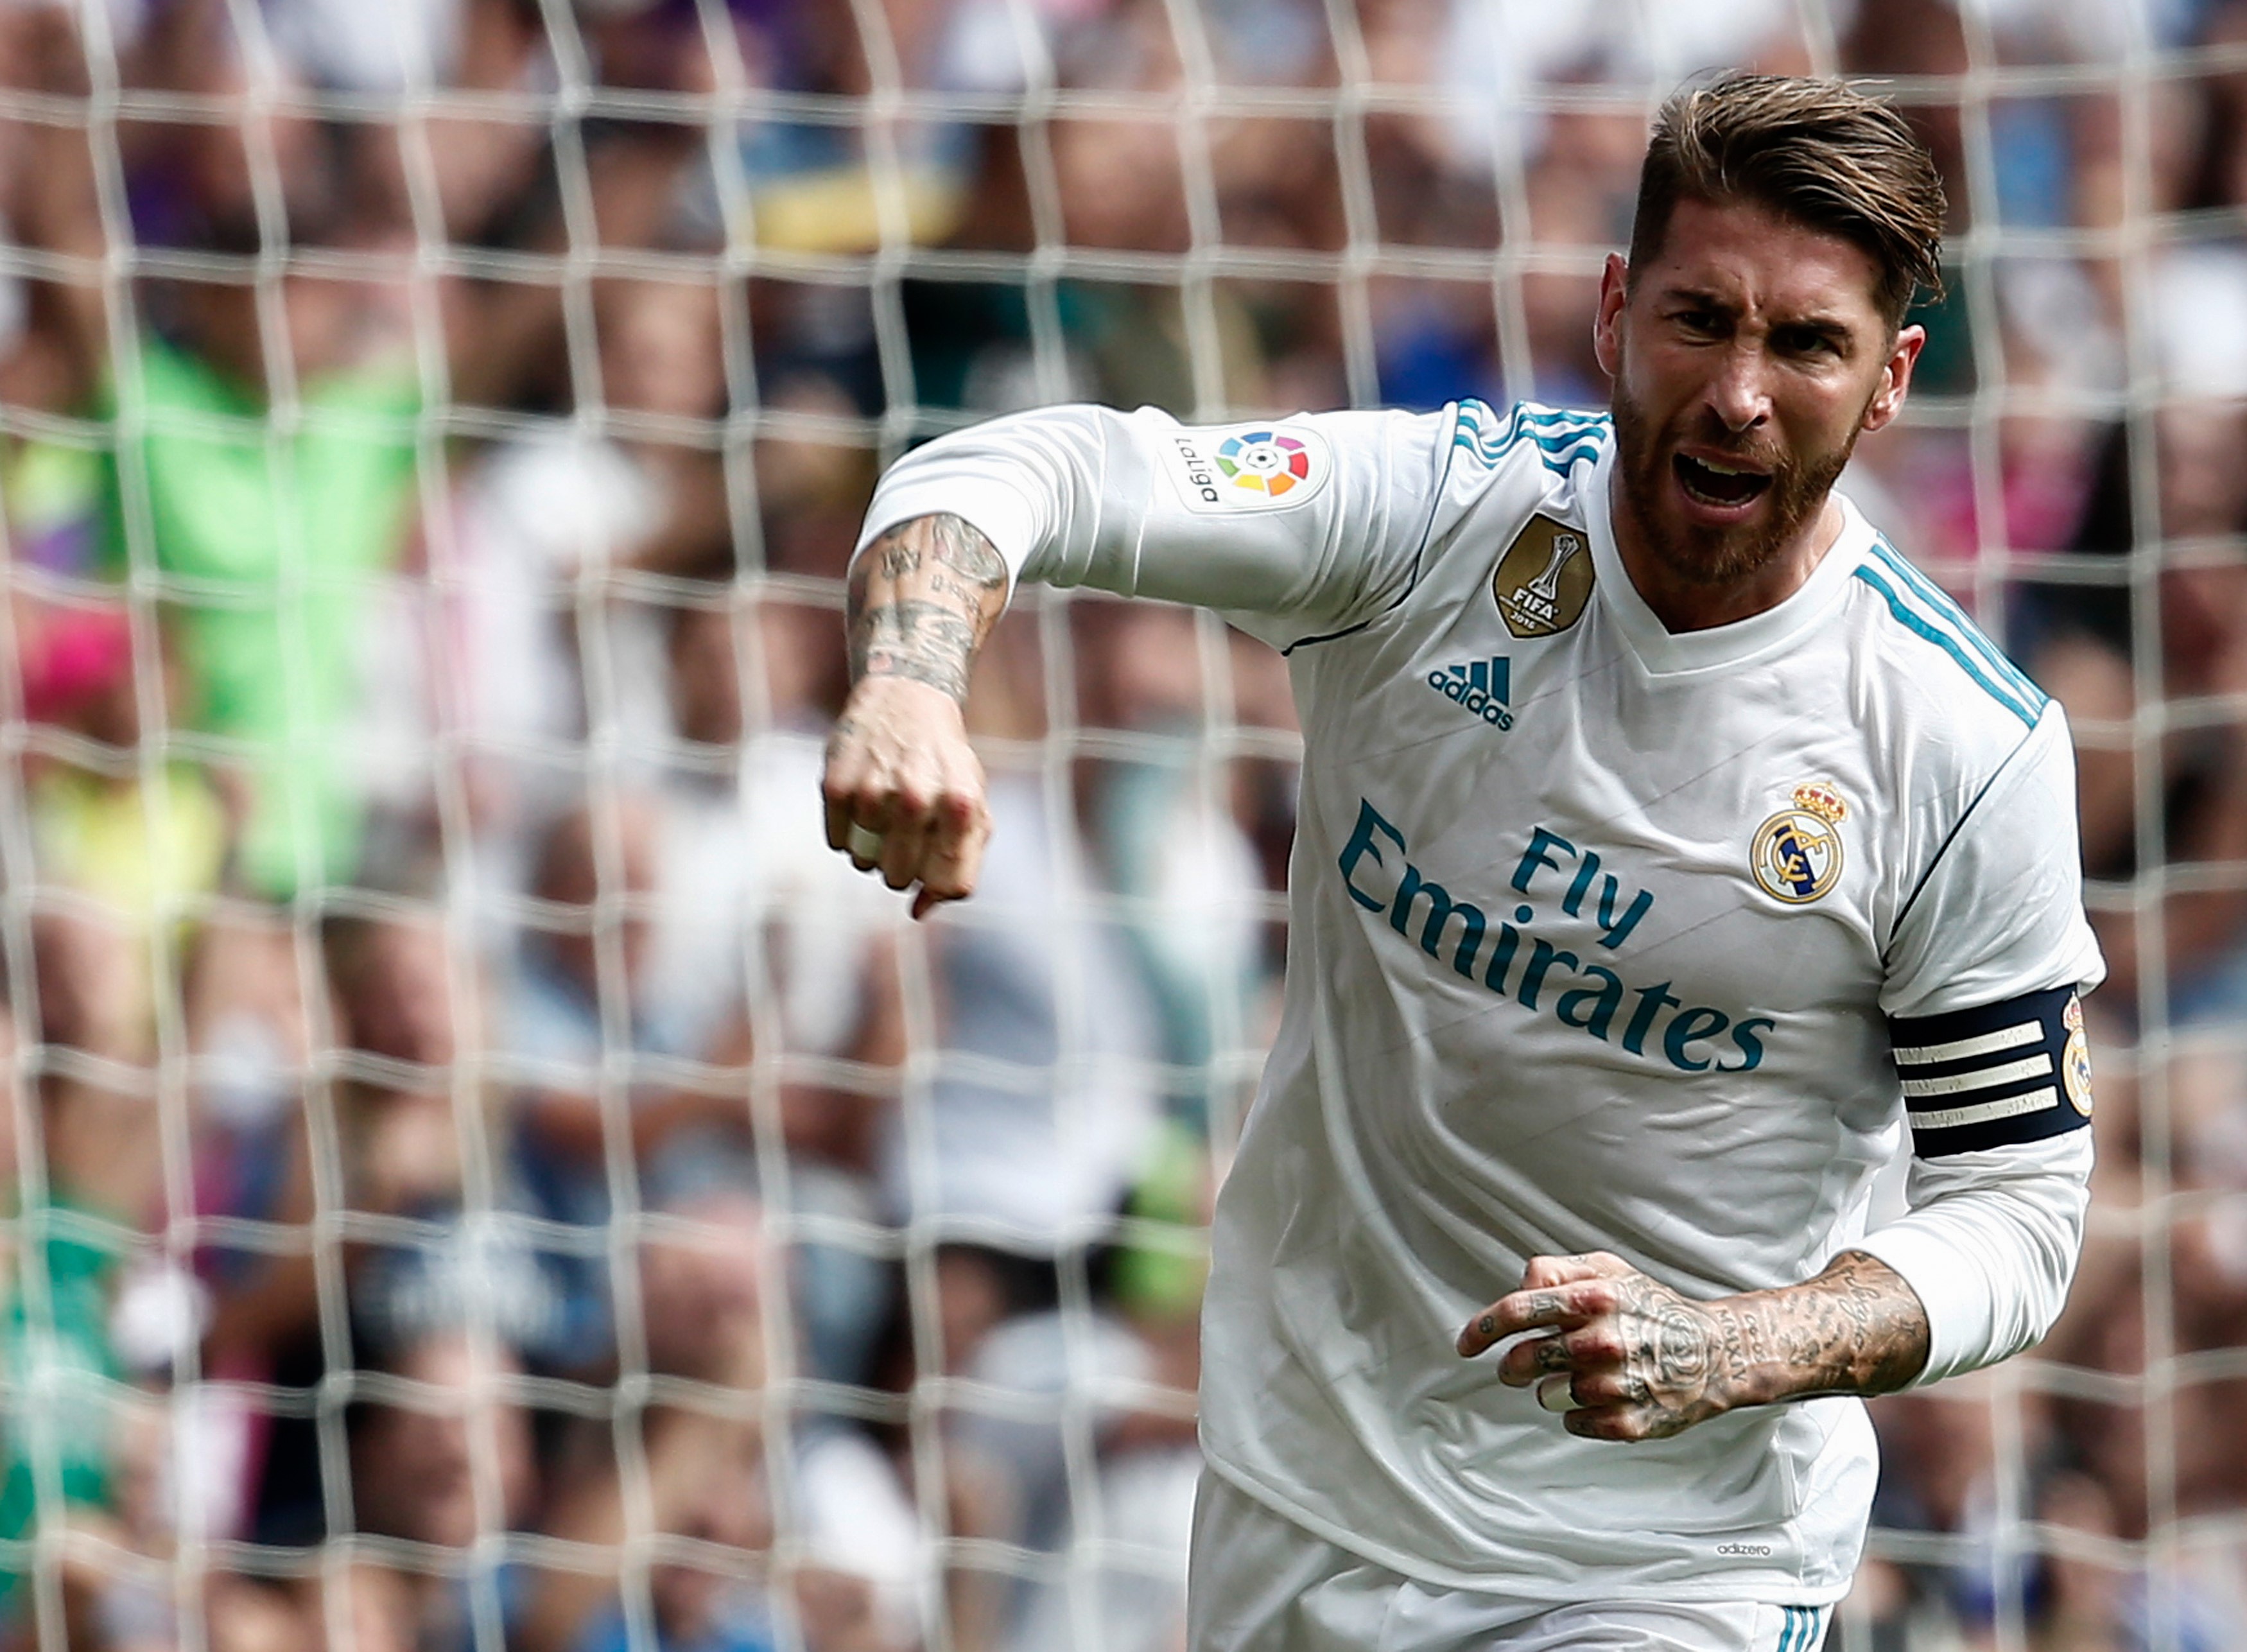 El primer capitán luce el brazalete desde la temporada 2015/2016. Llegó al Real Madrid en verano de 2005.